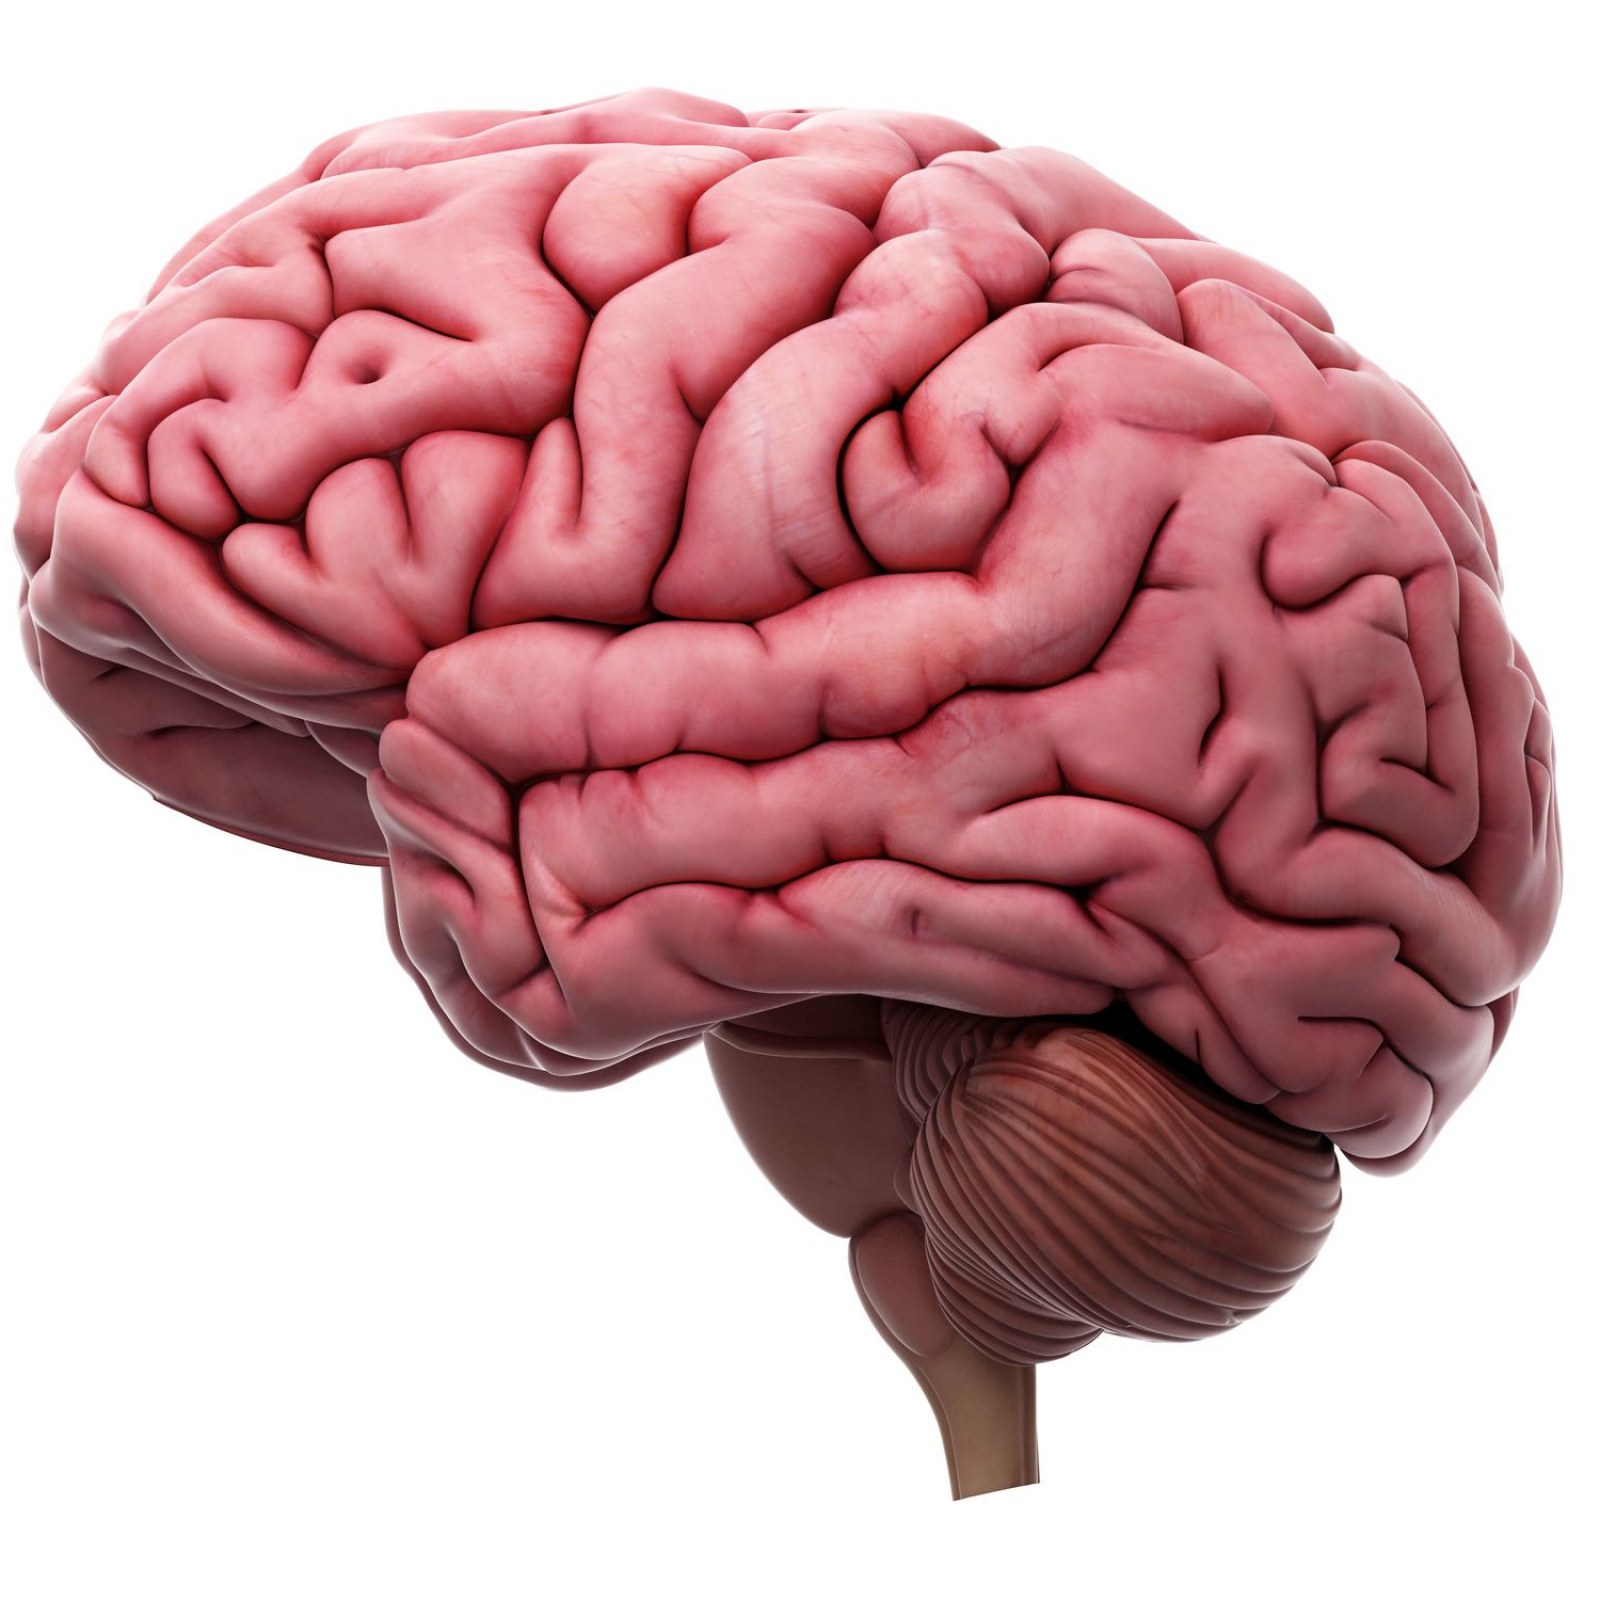 عکس مغز انسان برای مقاله های علمی و آموزشی